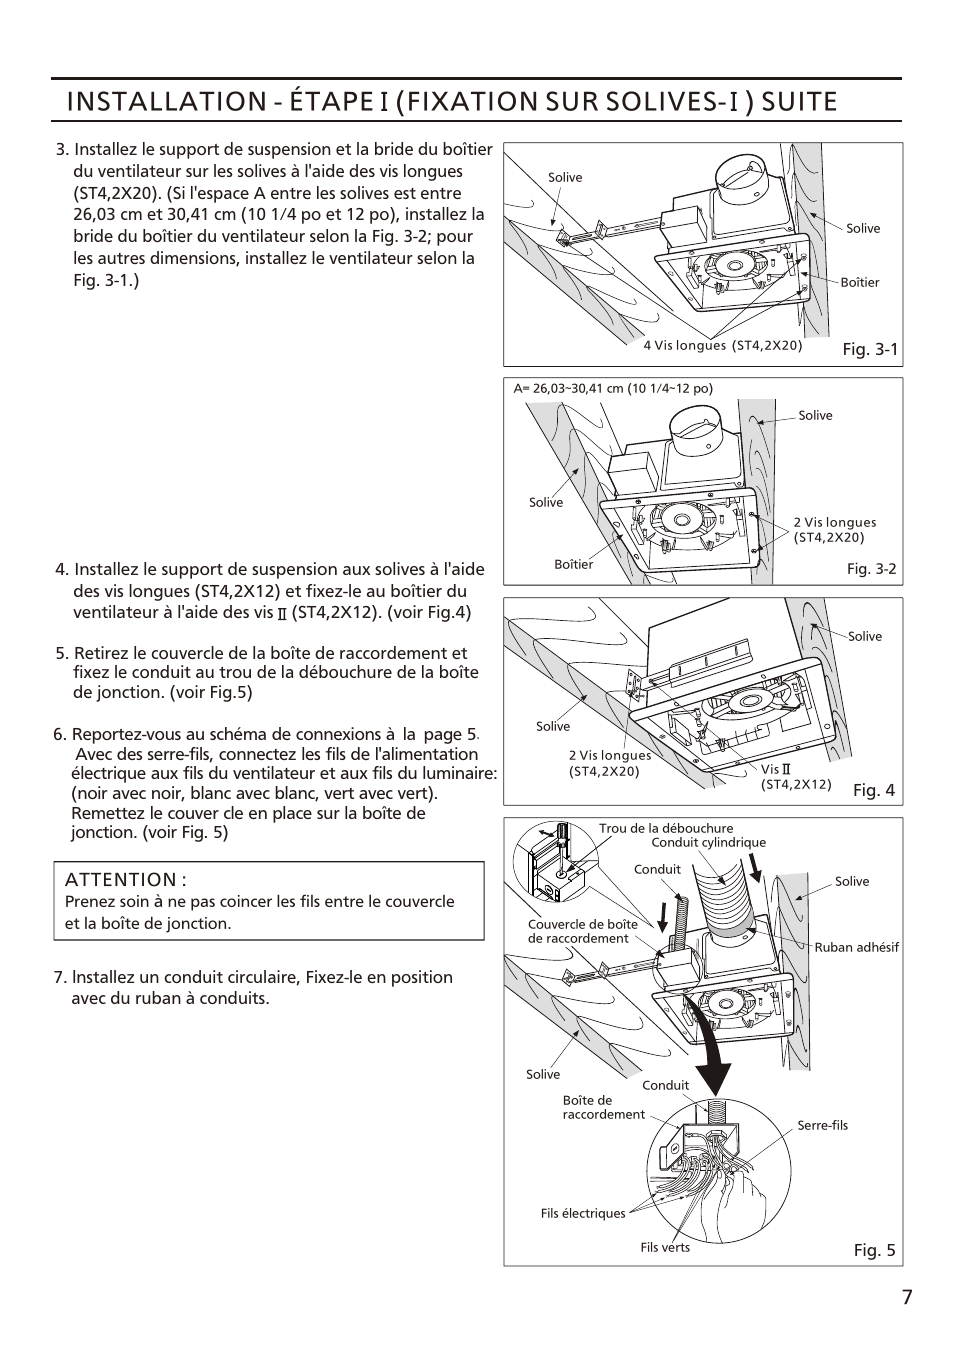 Installation - étape (fixation sur solives, Suite | Panasonic FV-08VFL3 Manuel d'utilisation | Page 7 / 16